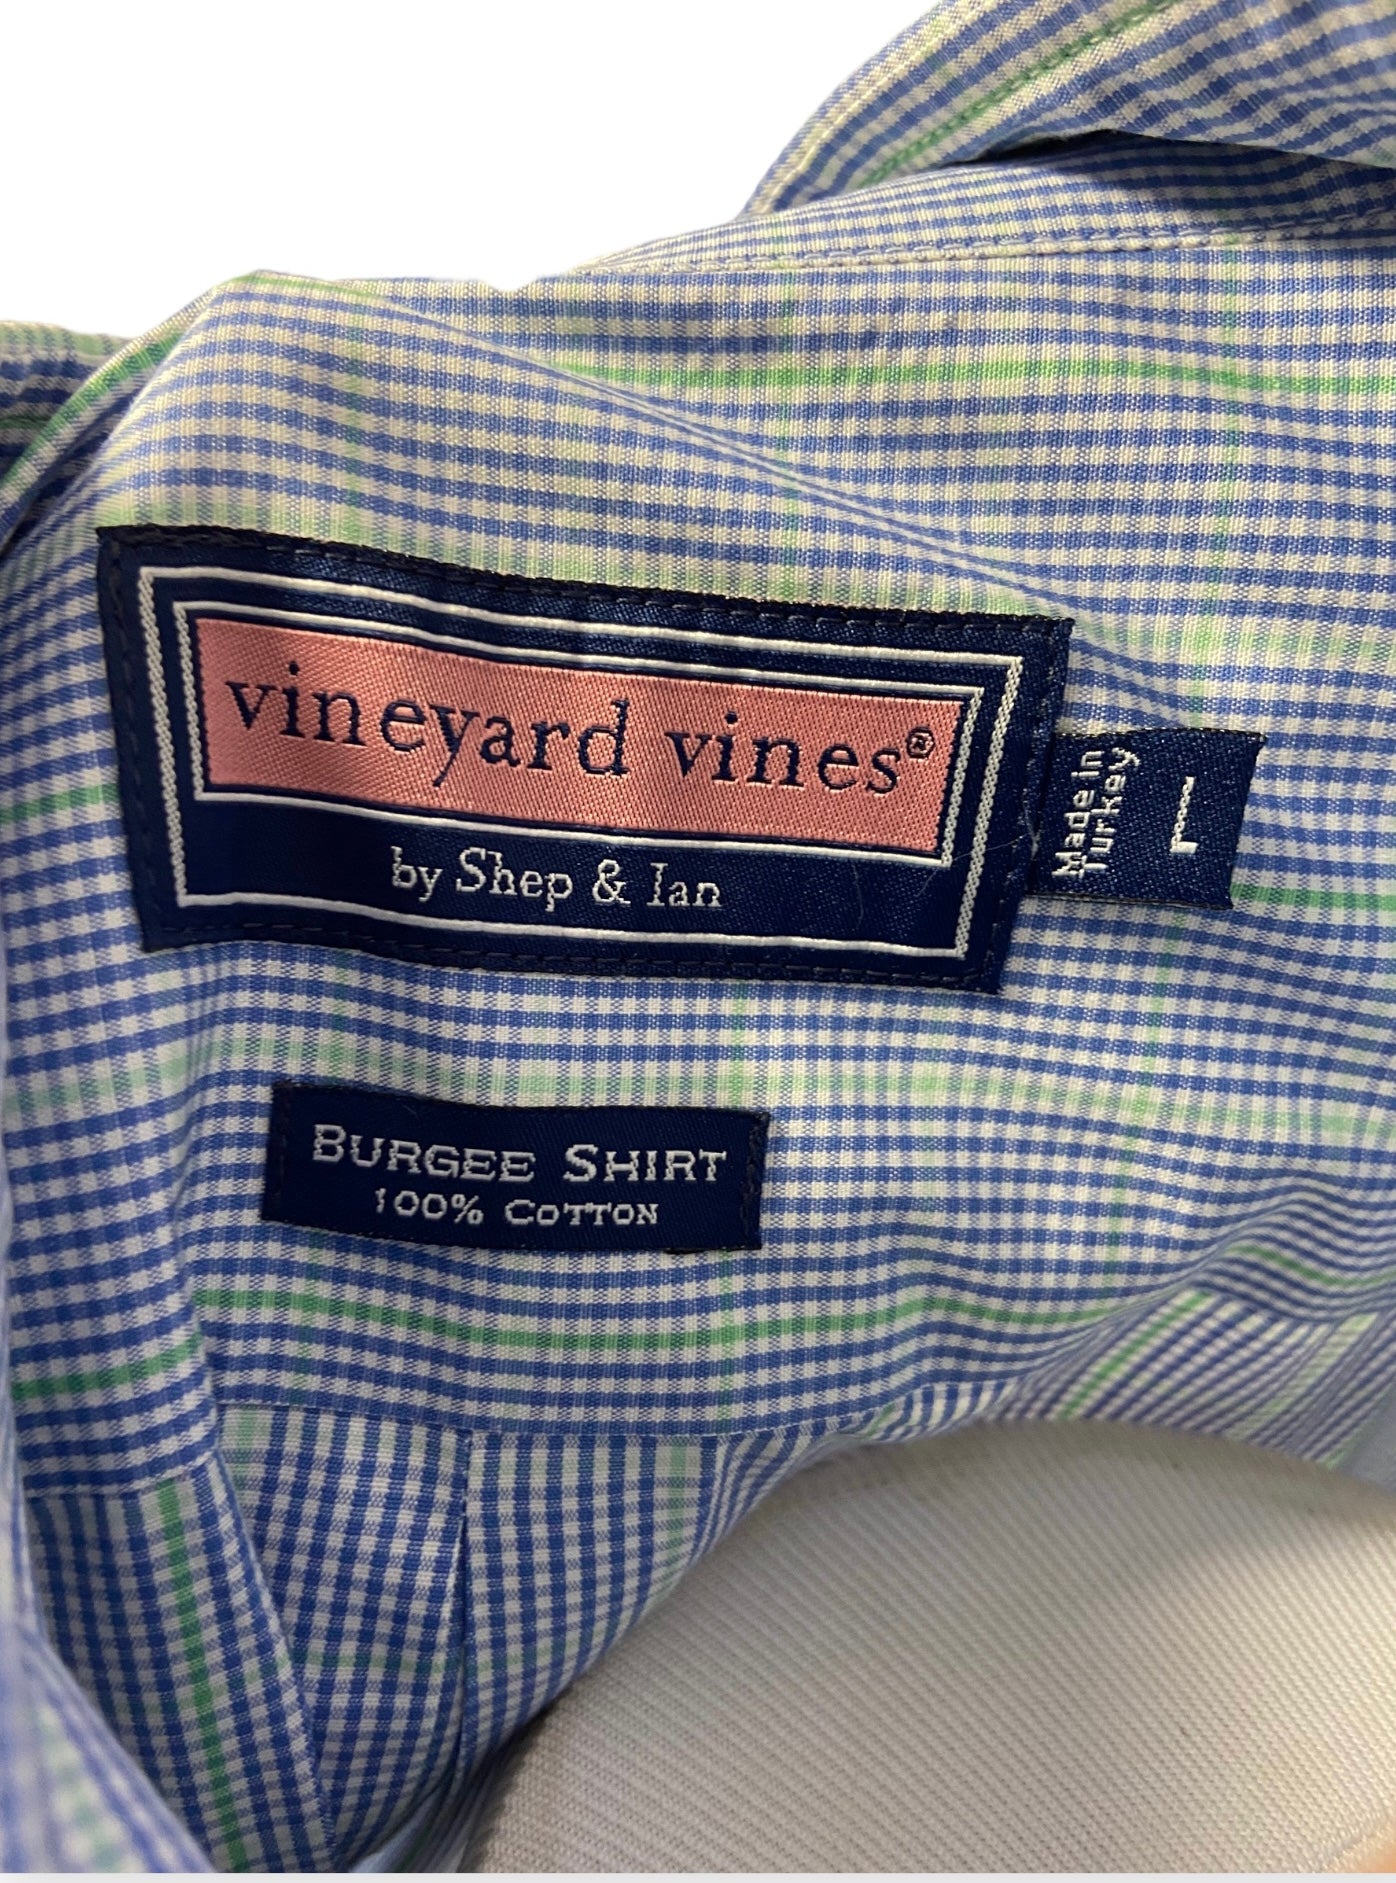 Men's Classic Fit Vineyards Vines Burgee Plaid Shirt Button Down Long Sleeve Size L